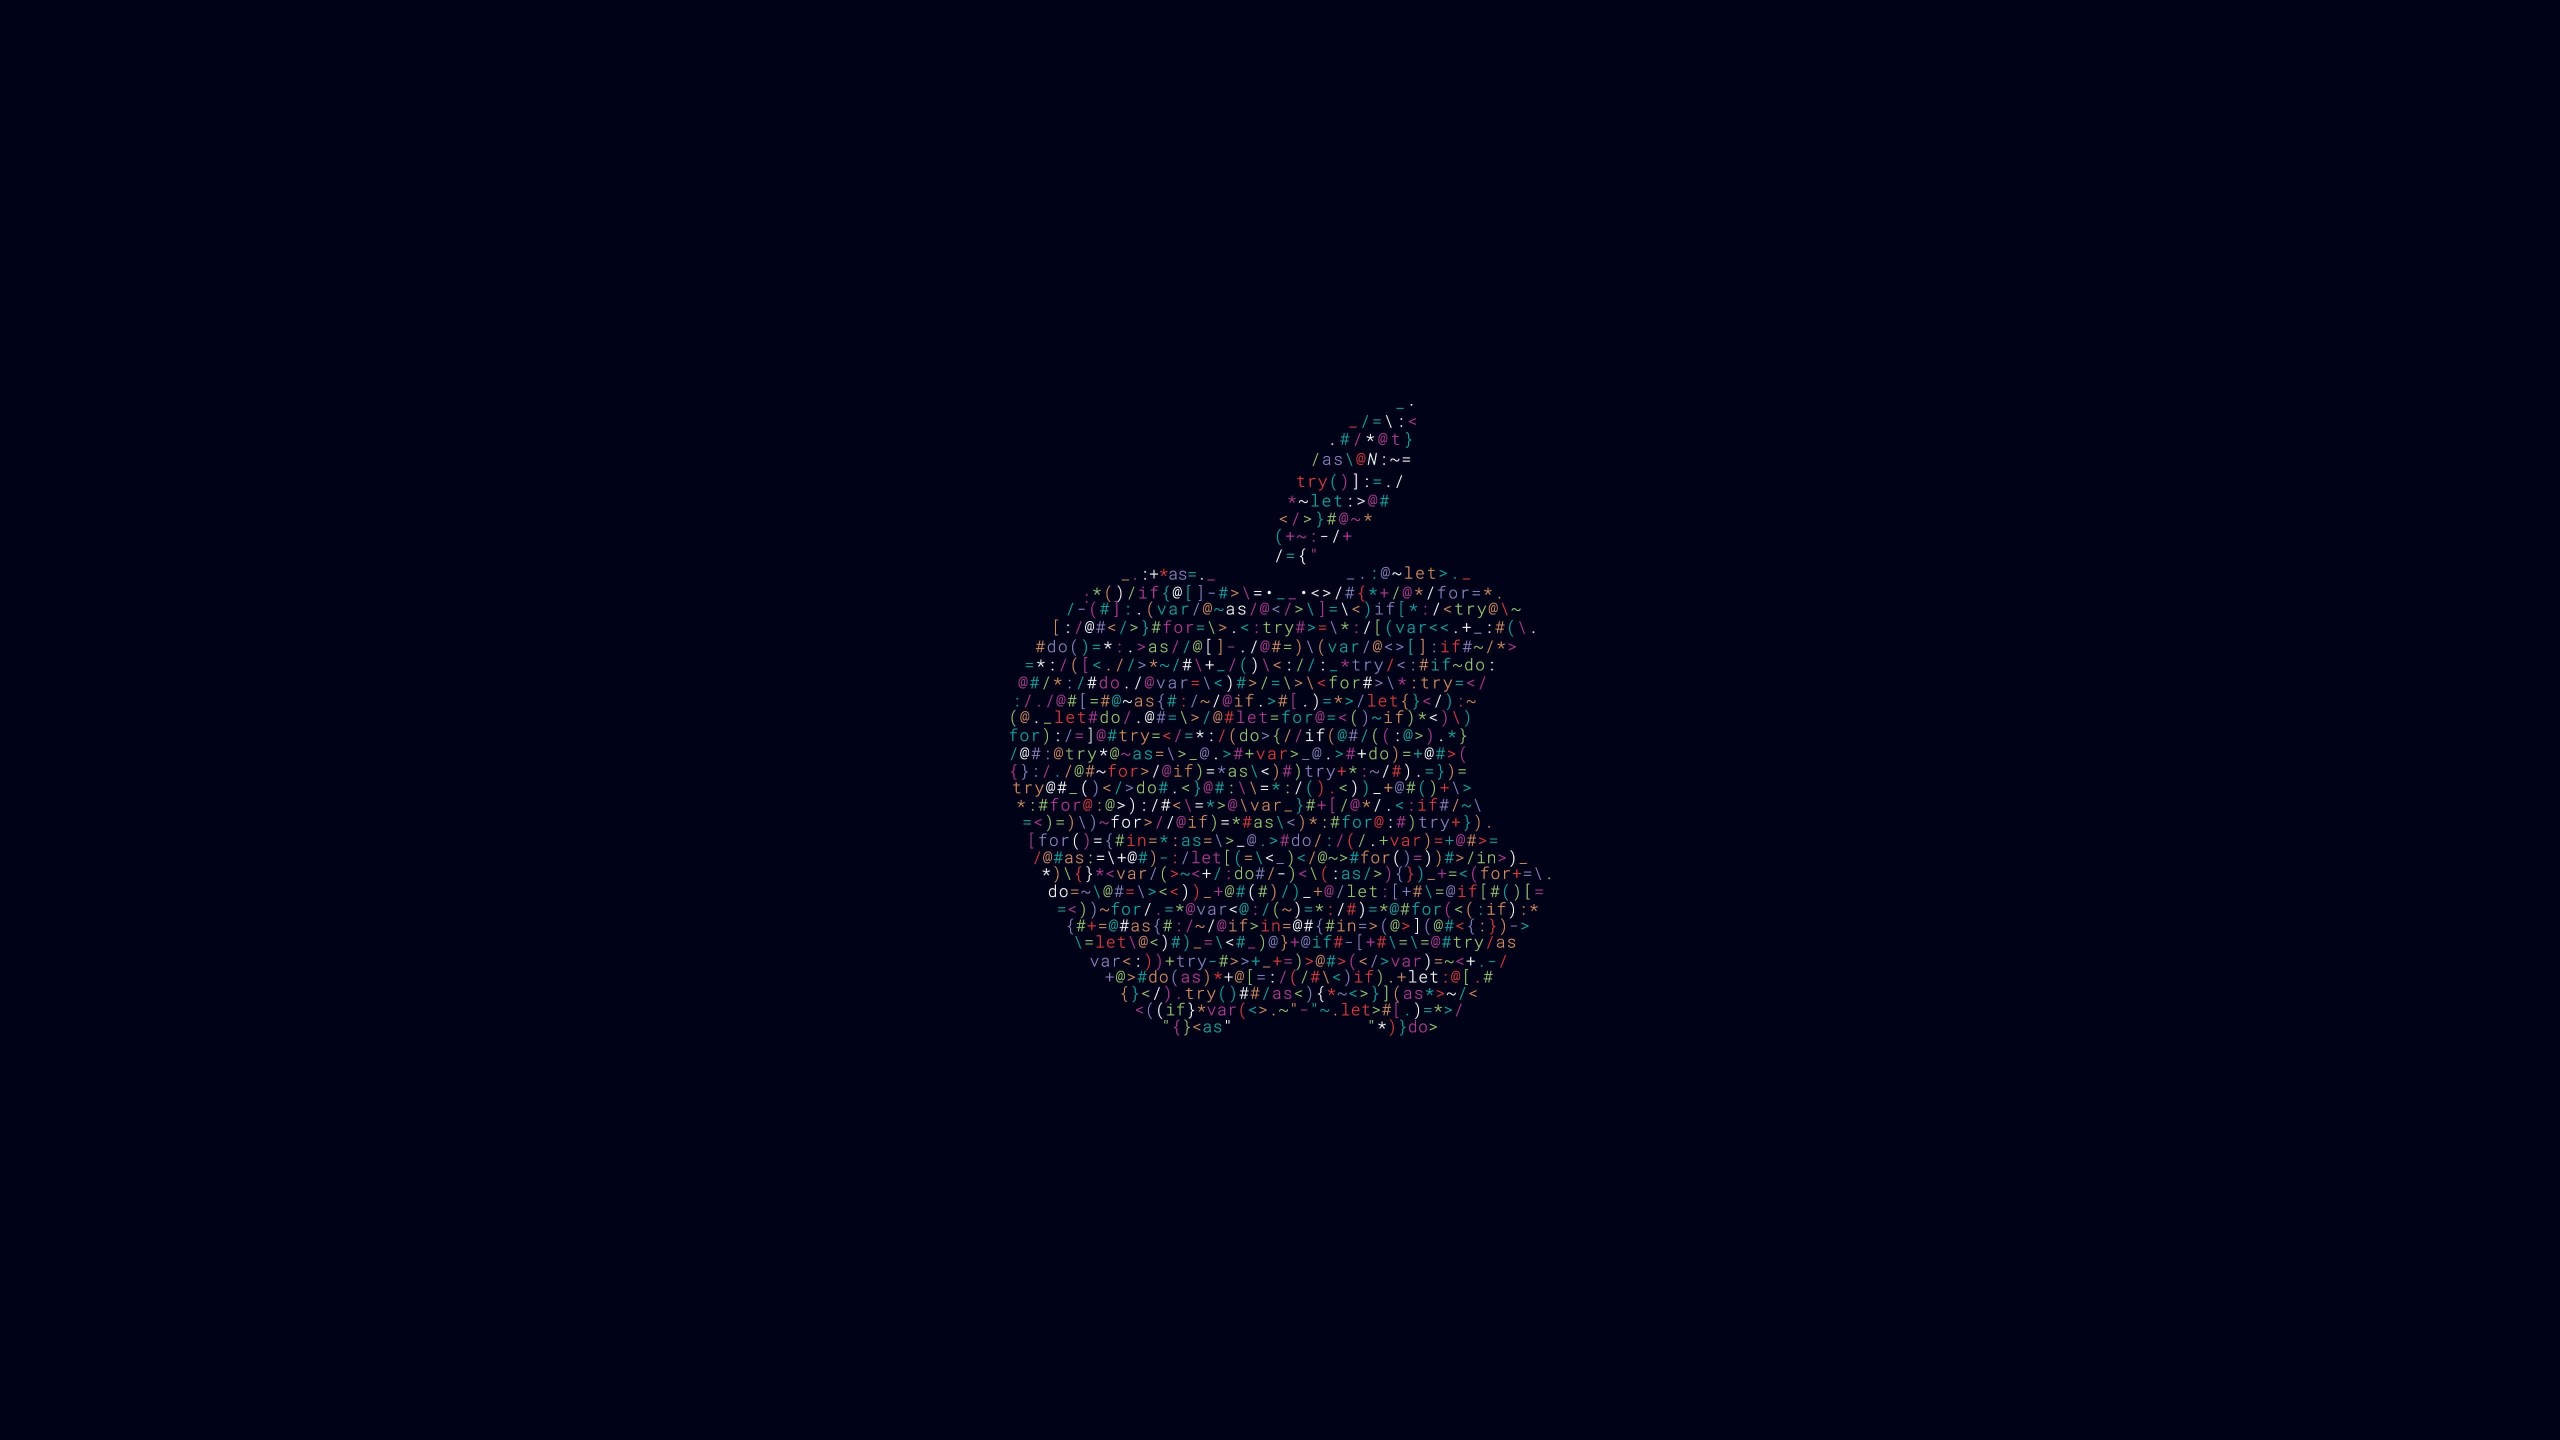 Apple WWDC 2016 Wallpaper for Desktop 2560x1440